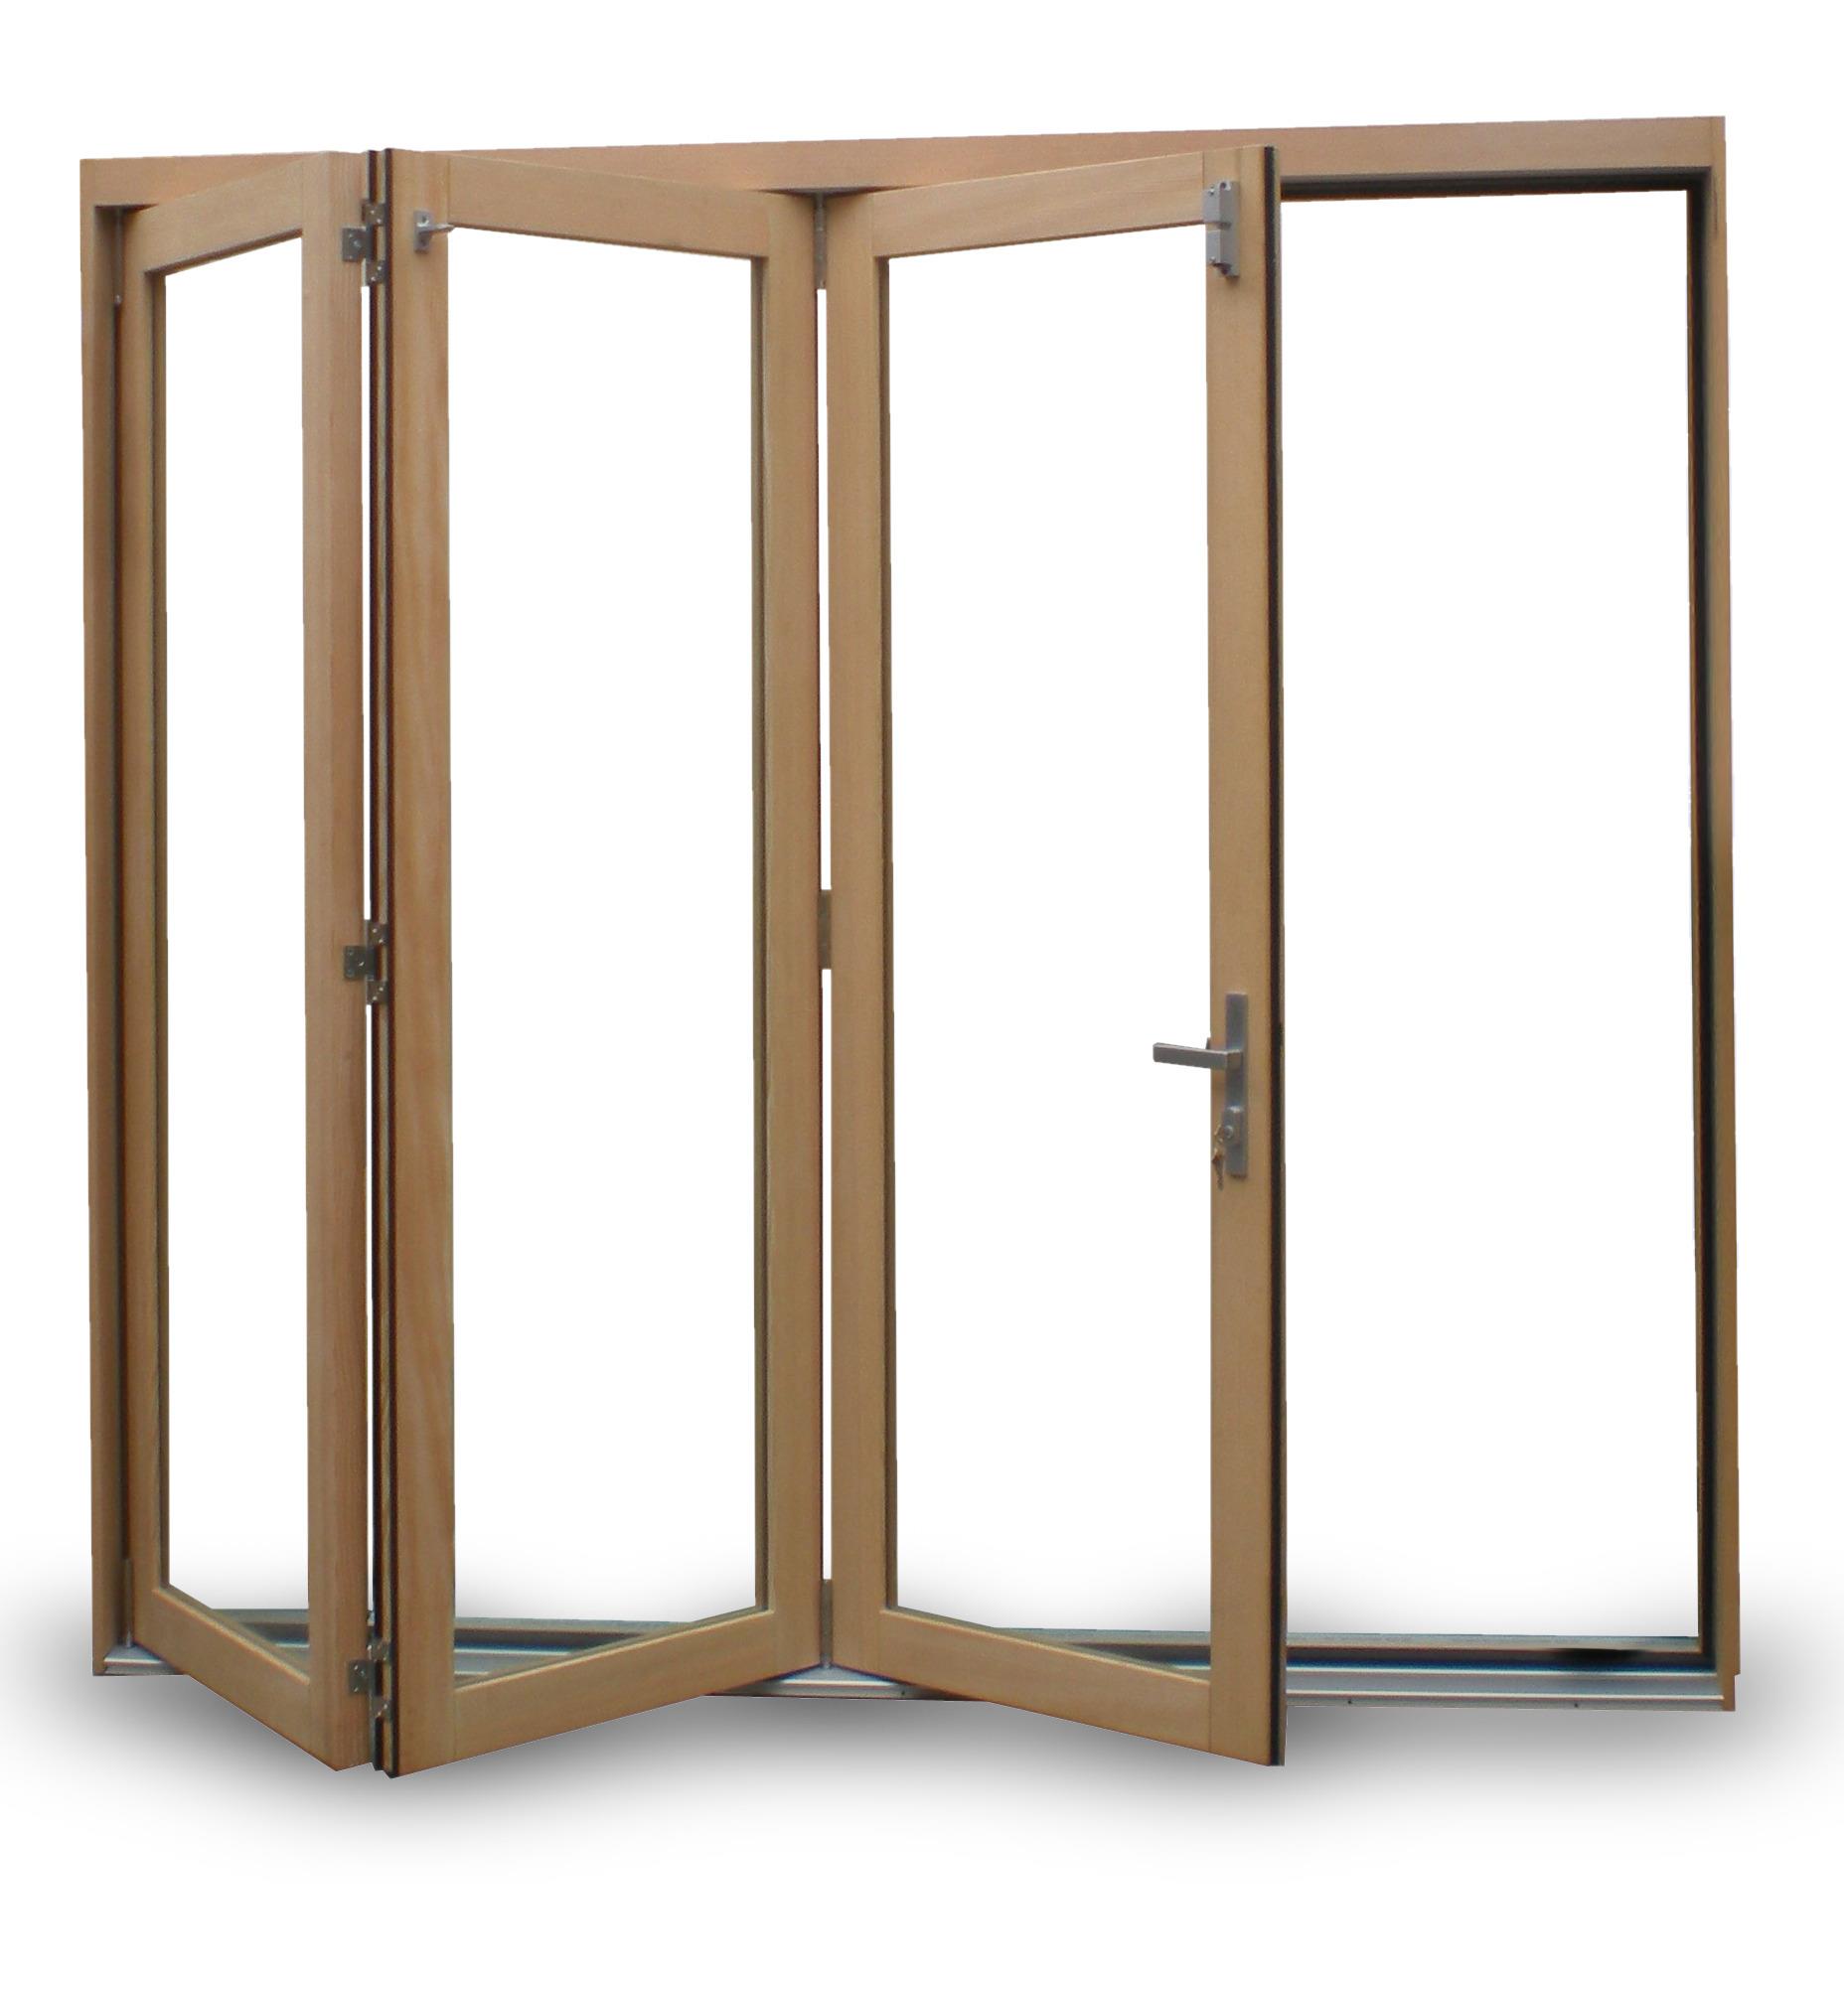 Douglas Fir / Spanish Cedar Bi-fold Door Panel